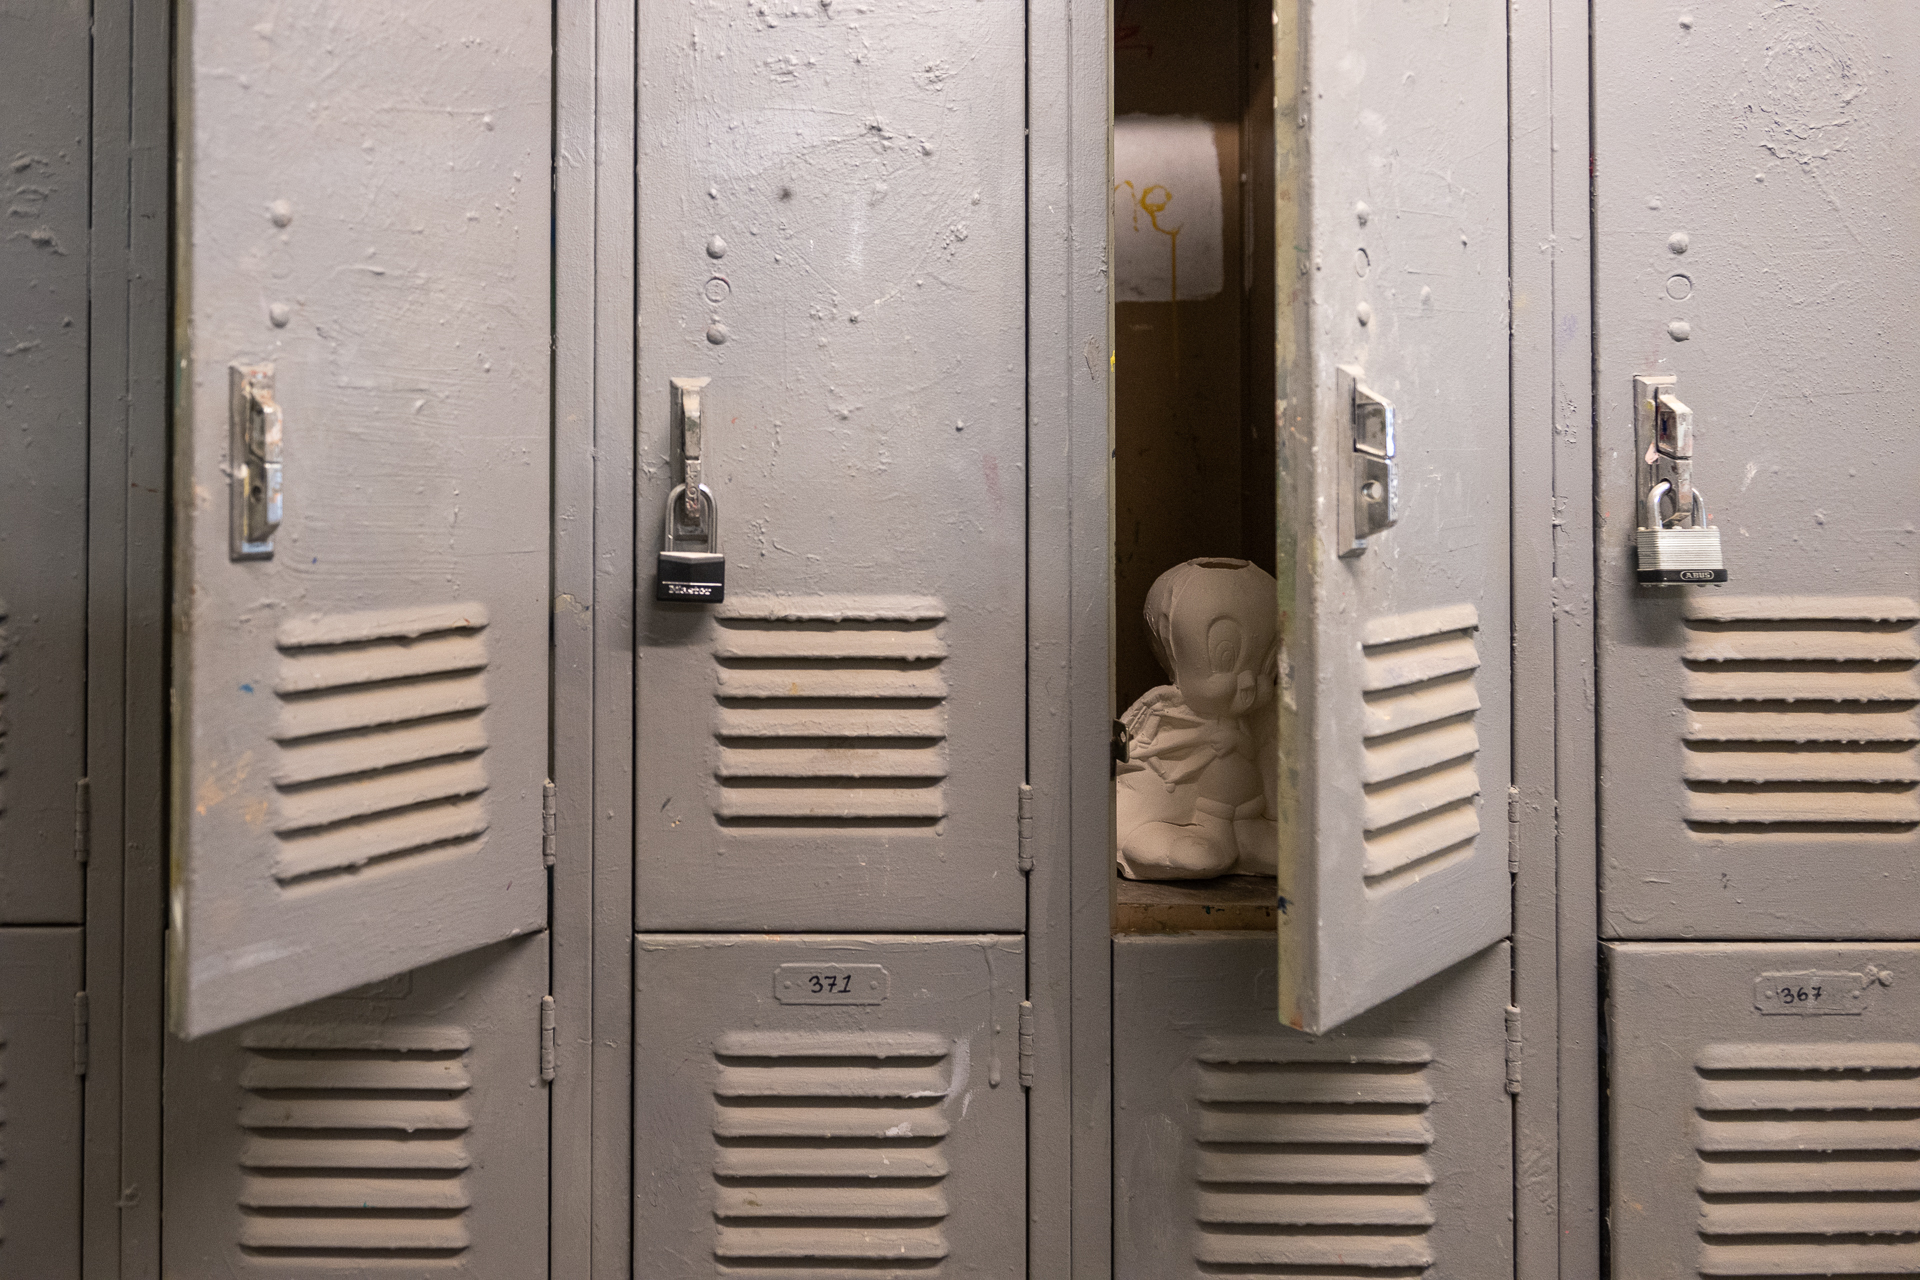 Cast plaster statue of Tweety bird sit inside ajar locker